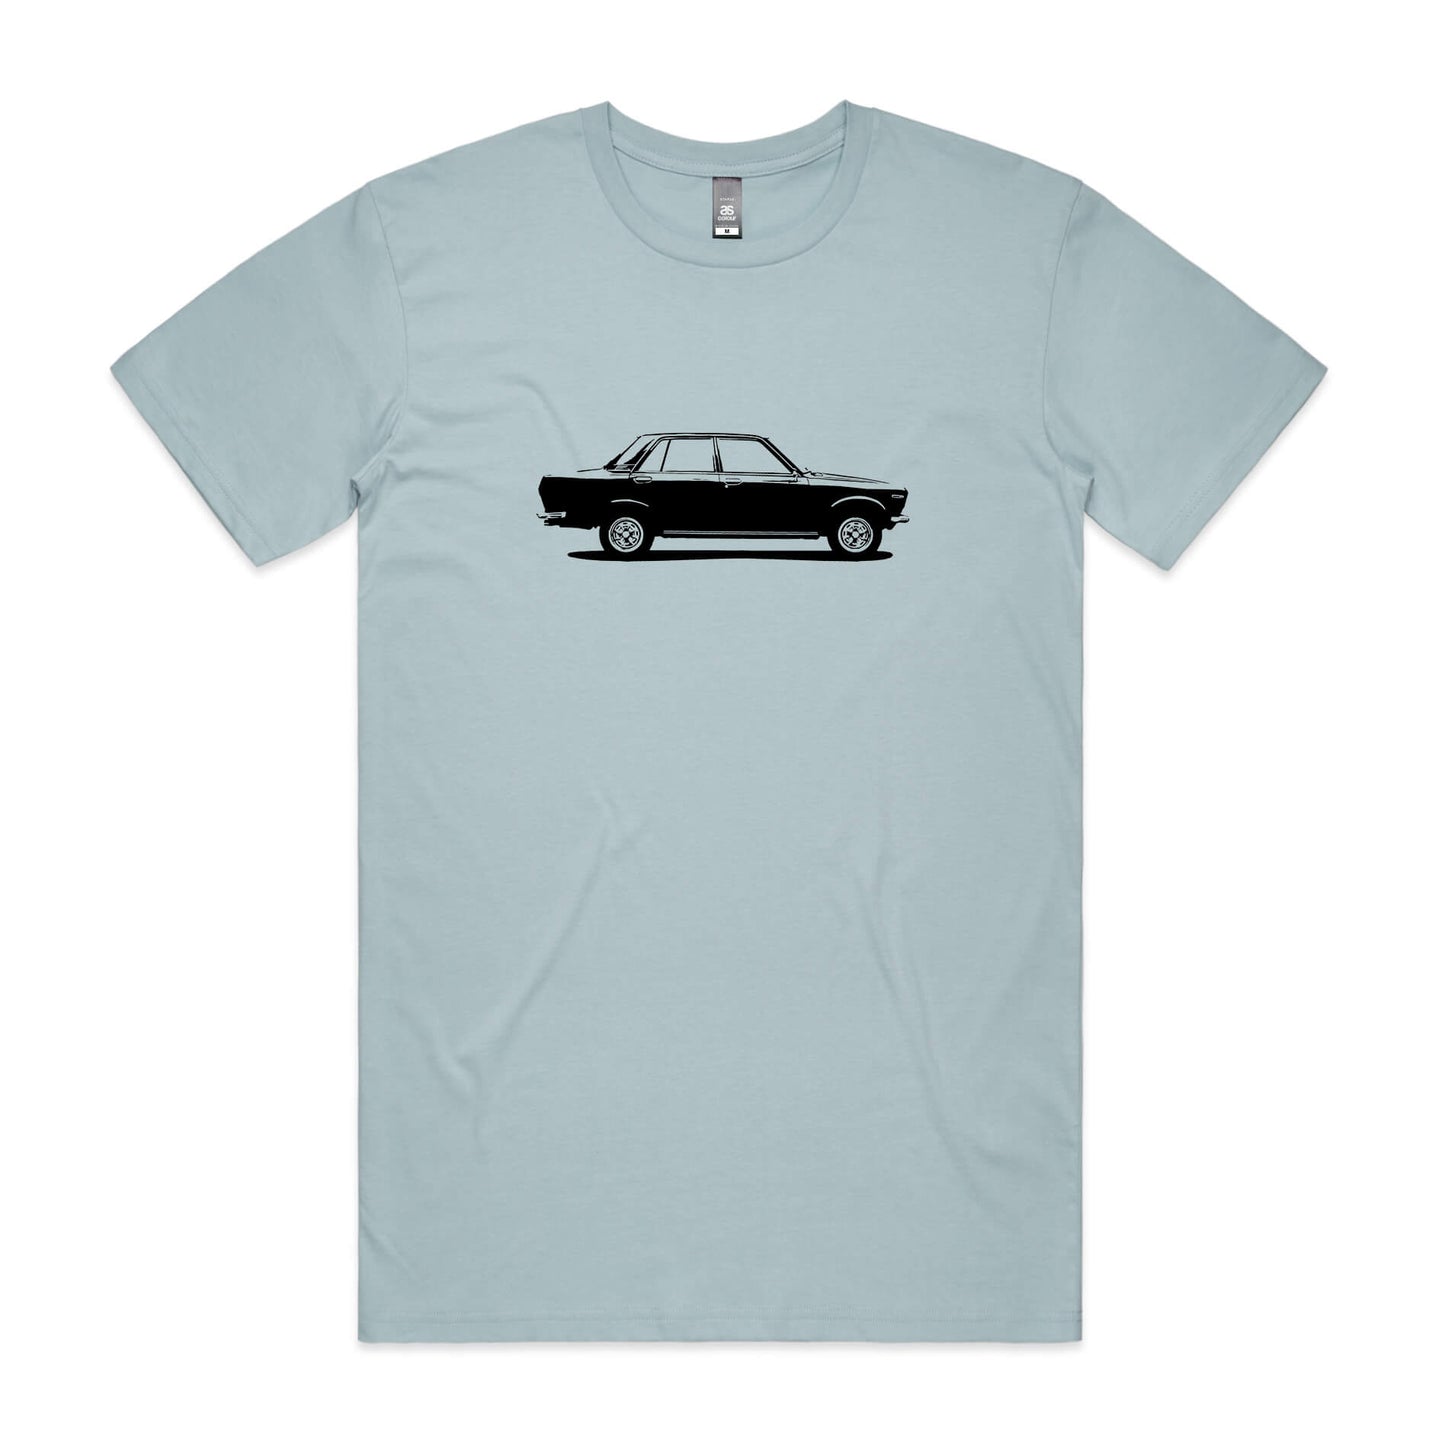 Datsun 1600 t-shirt in light blue